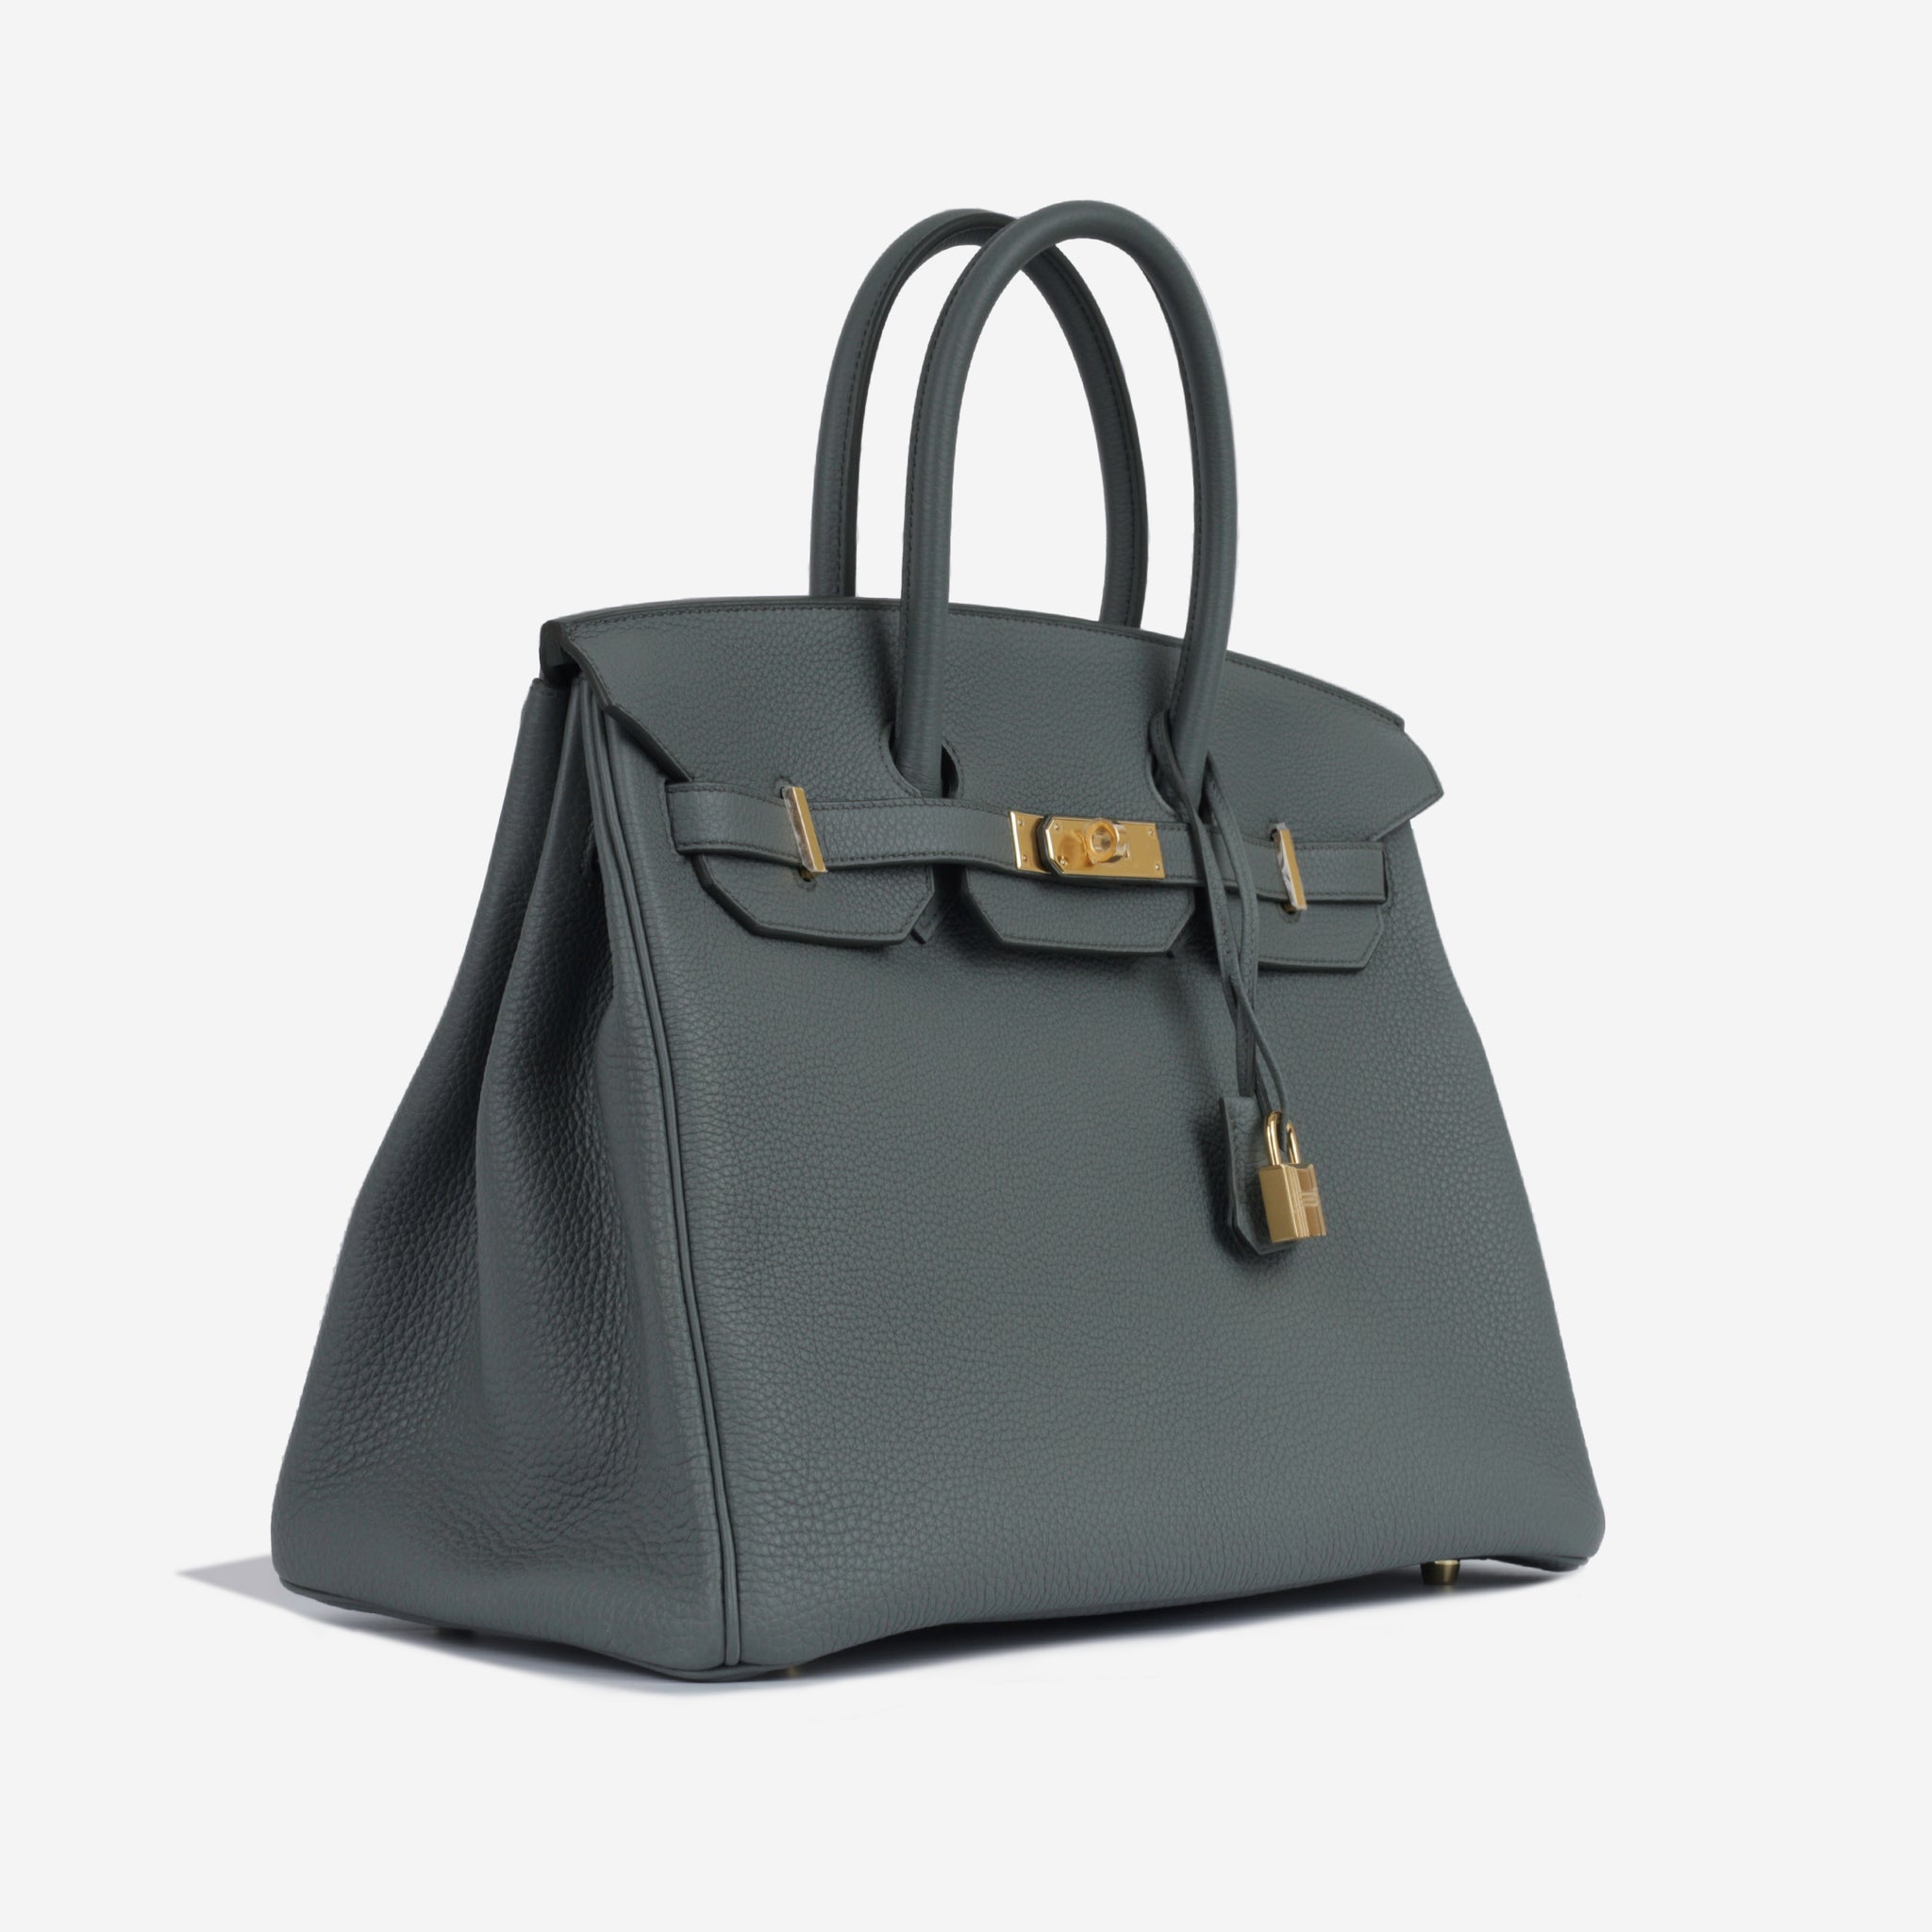 Hermès - Birkin 35 - Vert Amande Togo Leather - GHW - 2022 - Brand